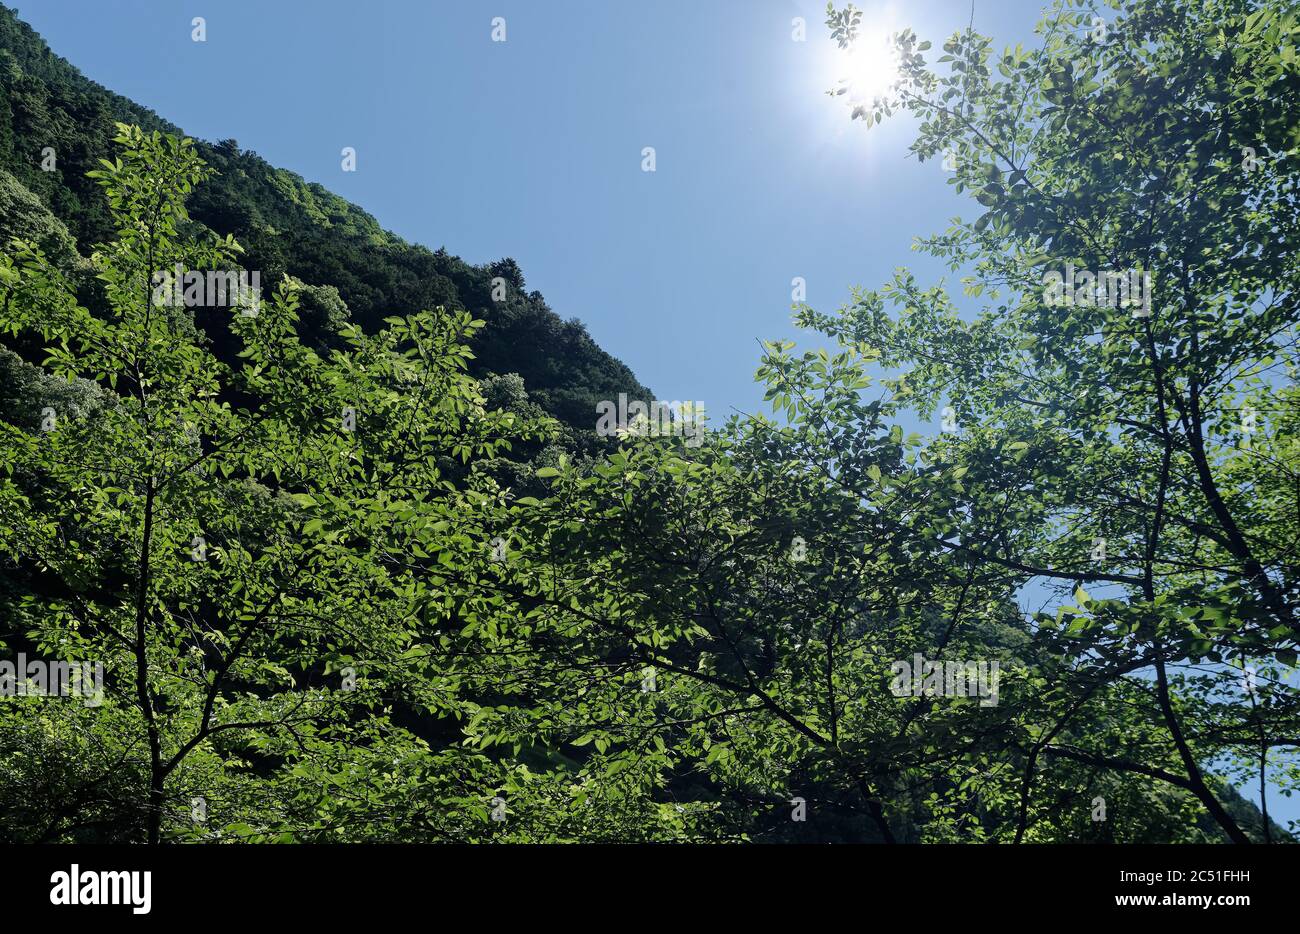 Mirando hacia una ladera boscosa y un cielo azul claro desde debajo de un follaje escaso en una mañana de verano Foto de stock